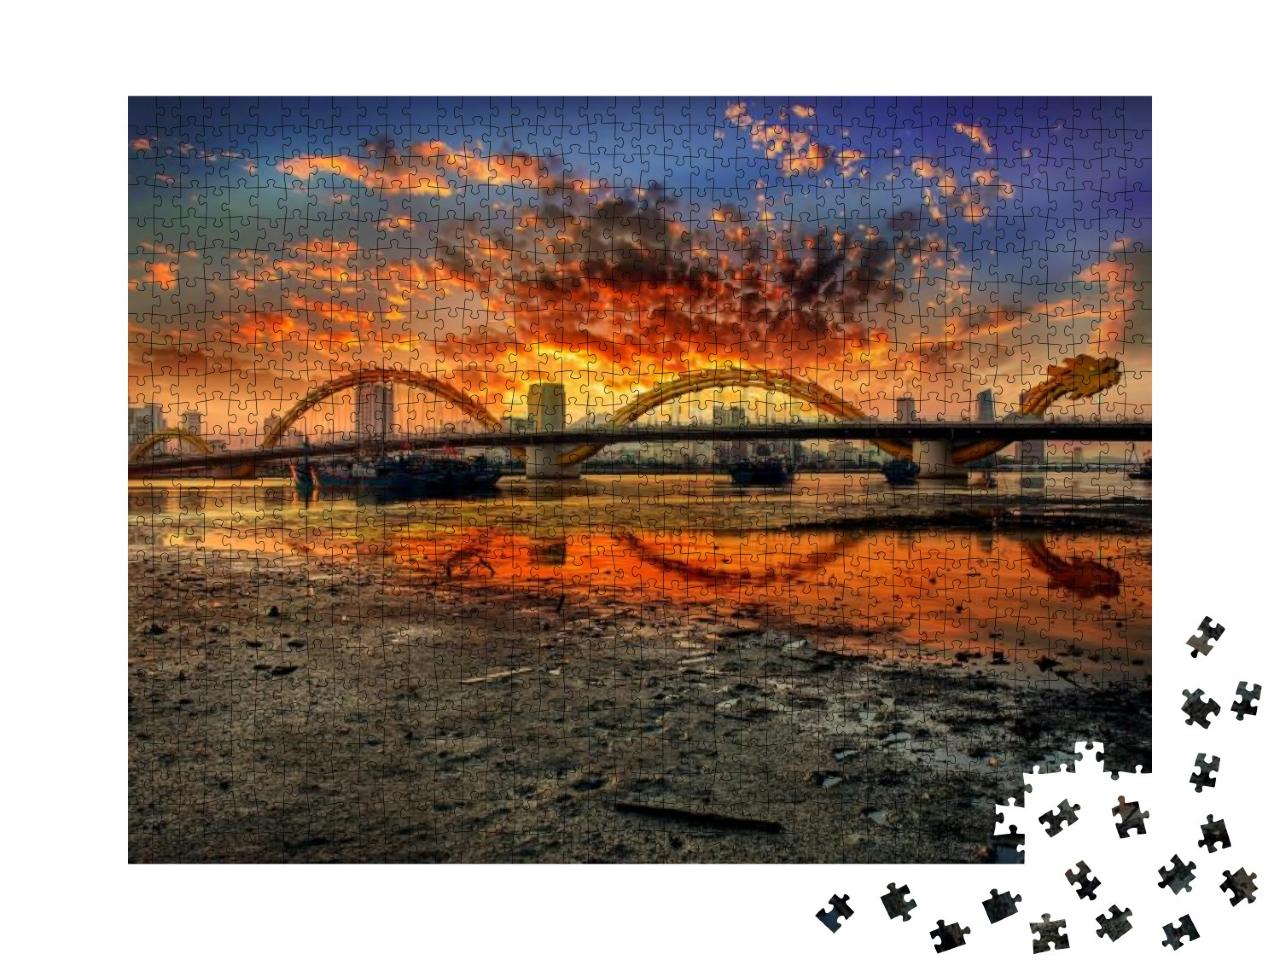 Da Nang, Vietnam Dragon Bridge At Sunset... Jigsaw Puzzle with 1000 pieces